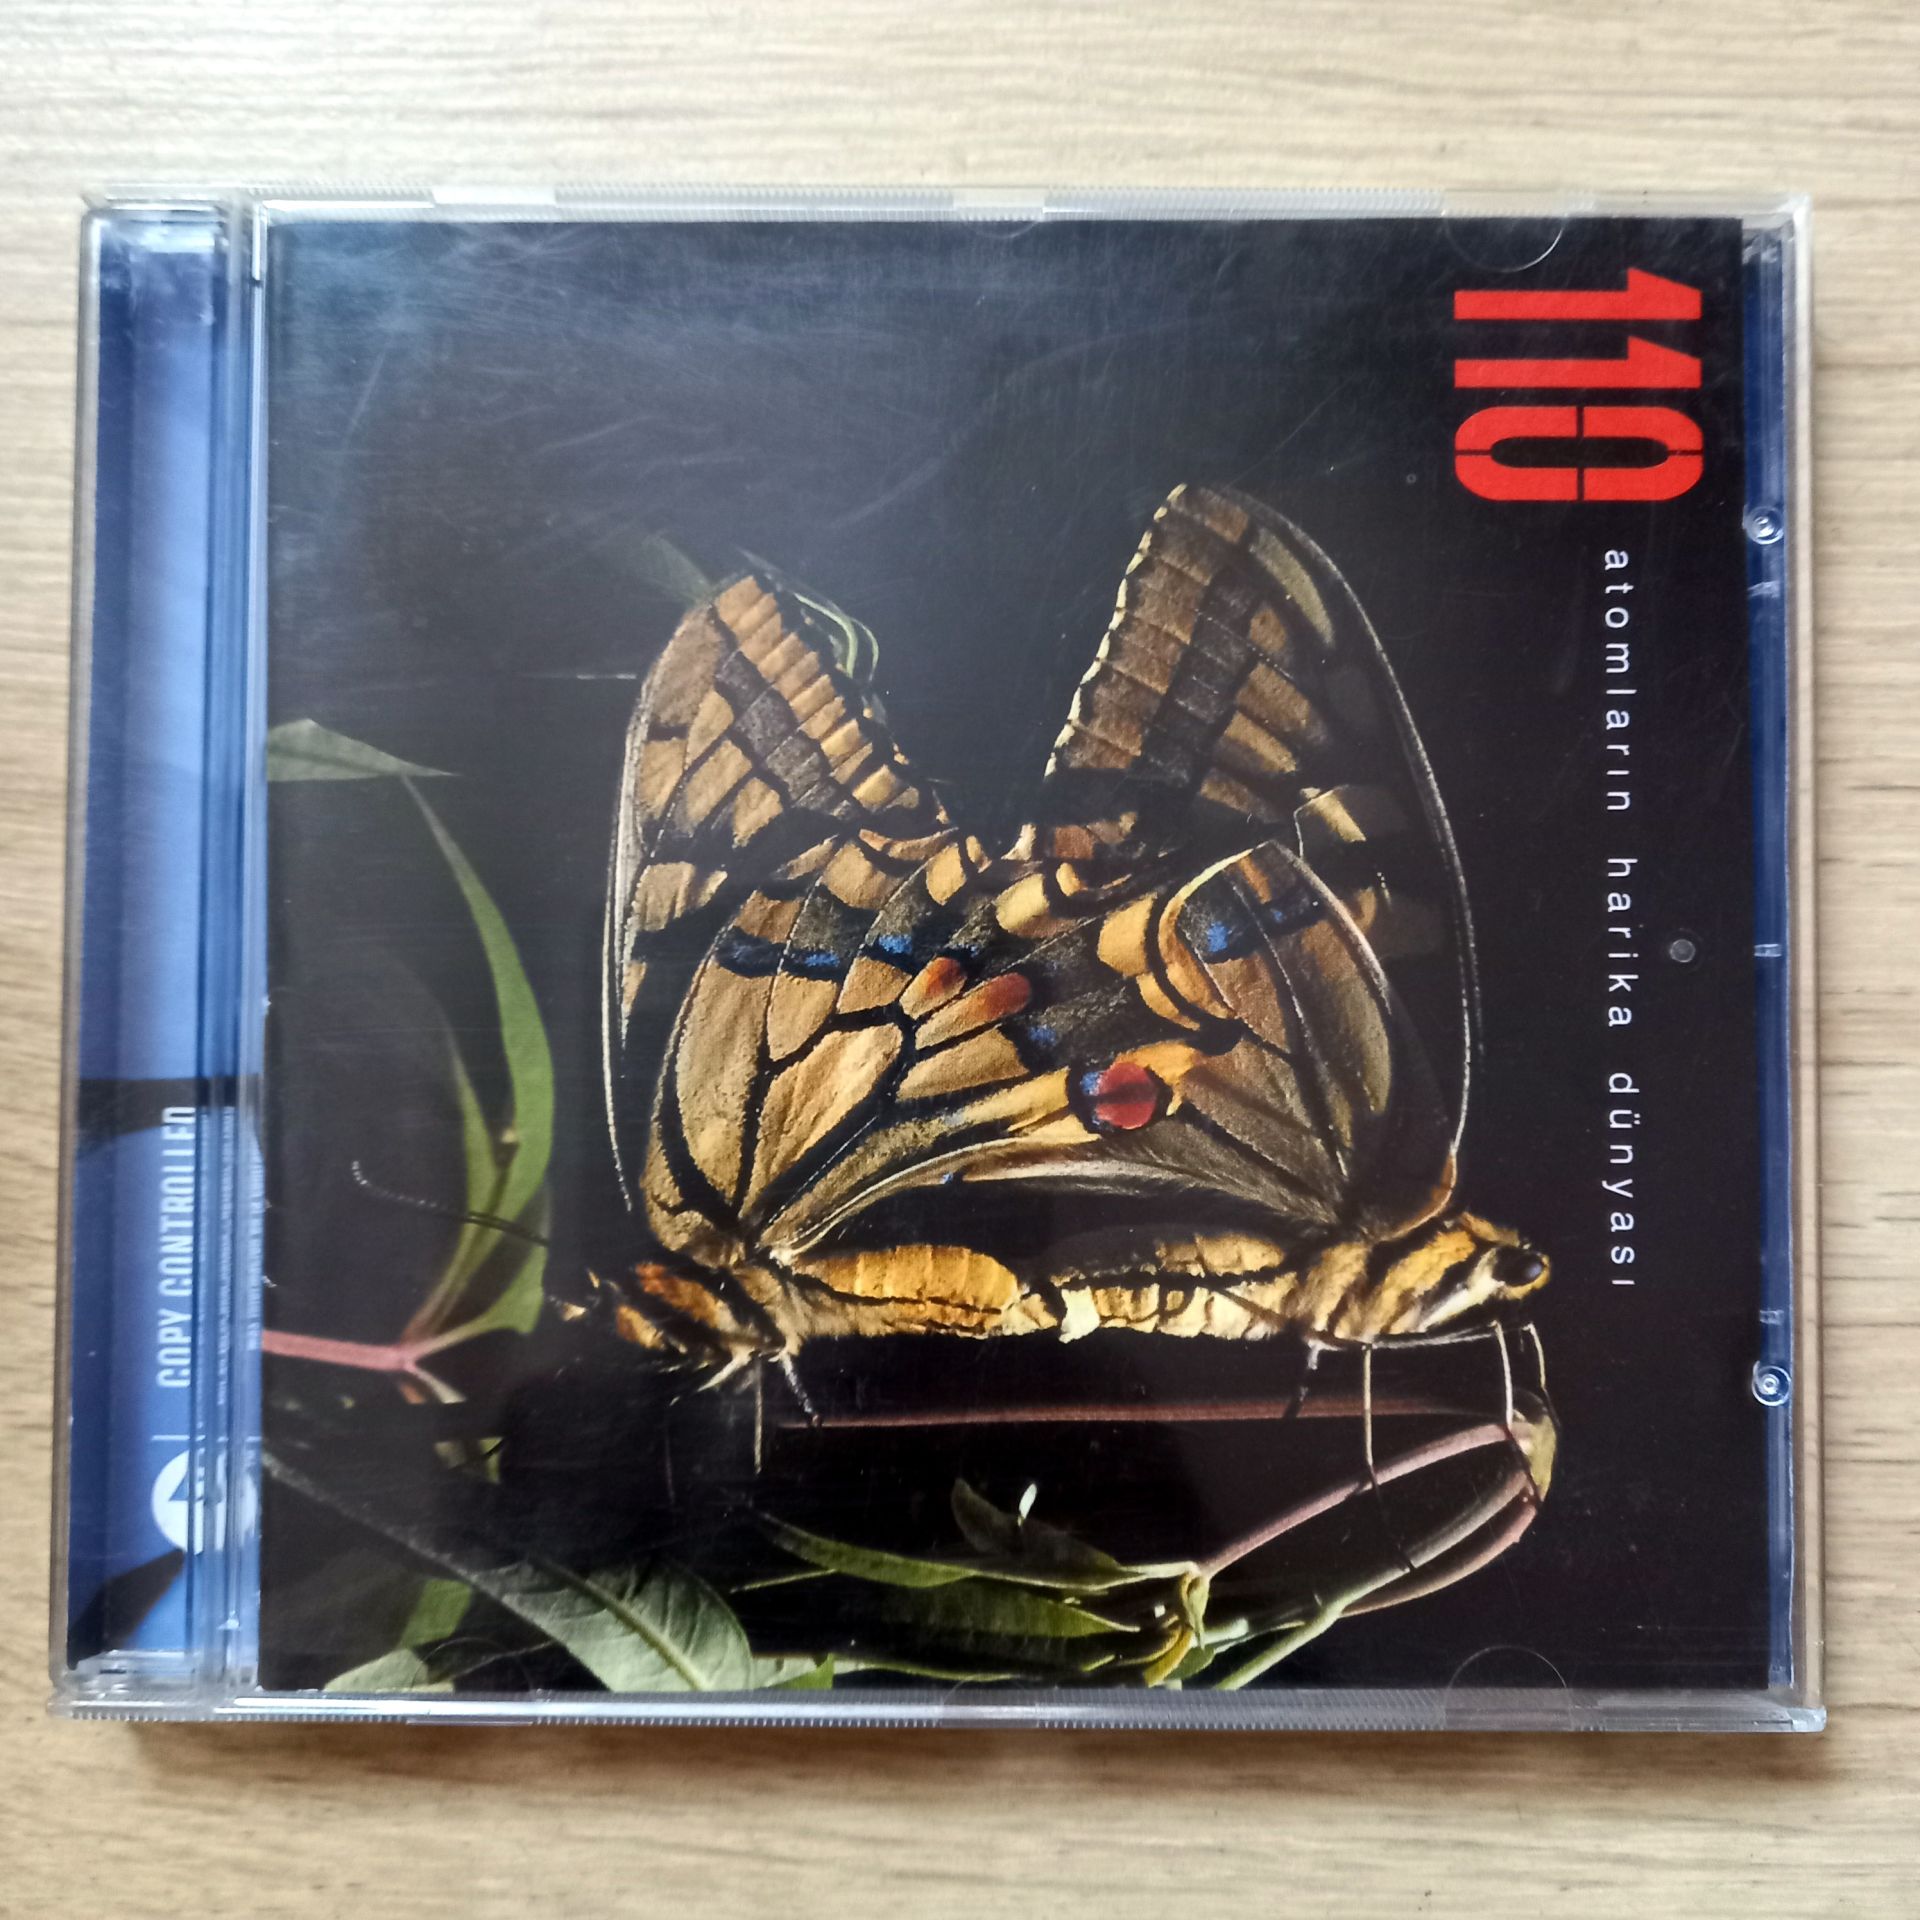 110 – ATOMLARIN HARİKA DÜNYASİ (2005) - CD 2.EL